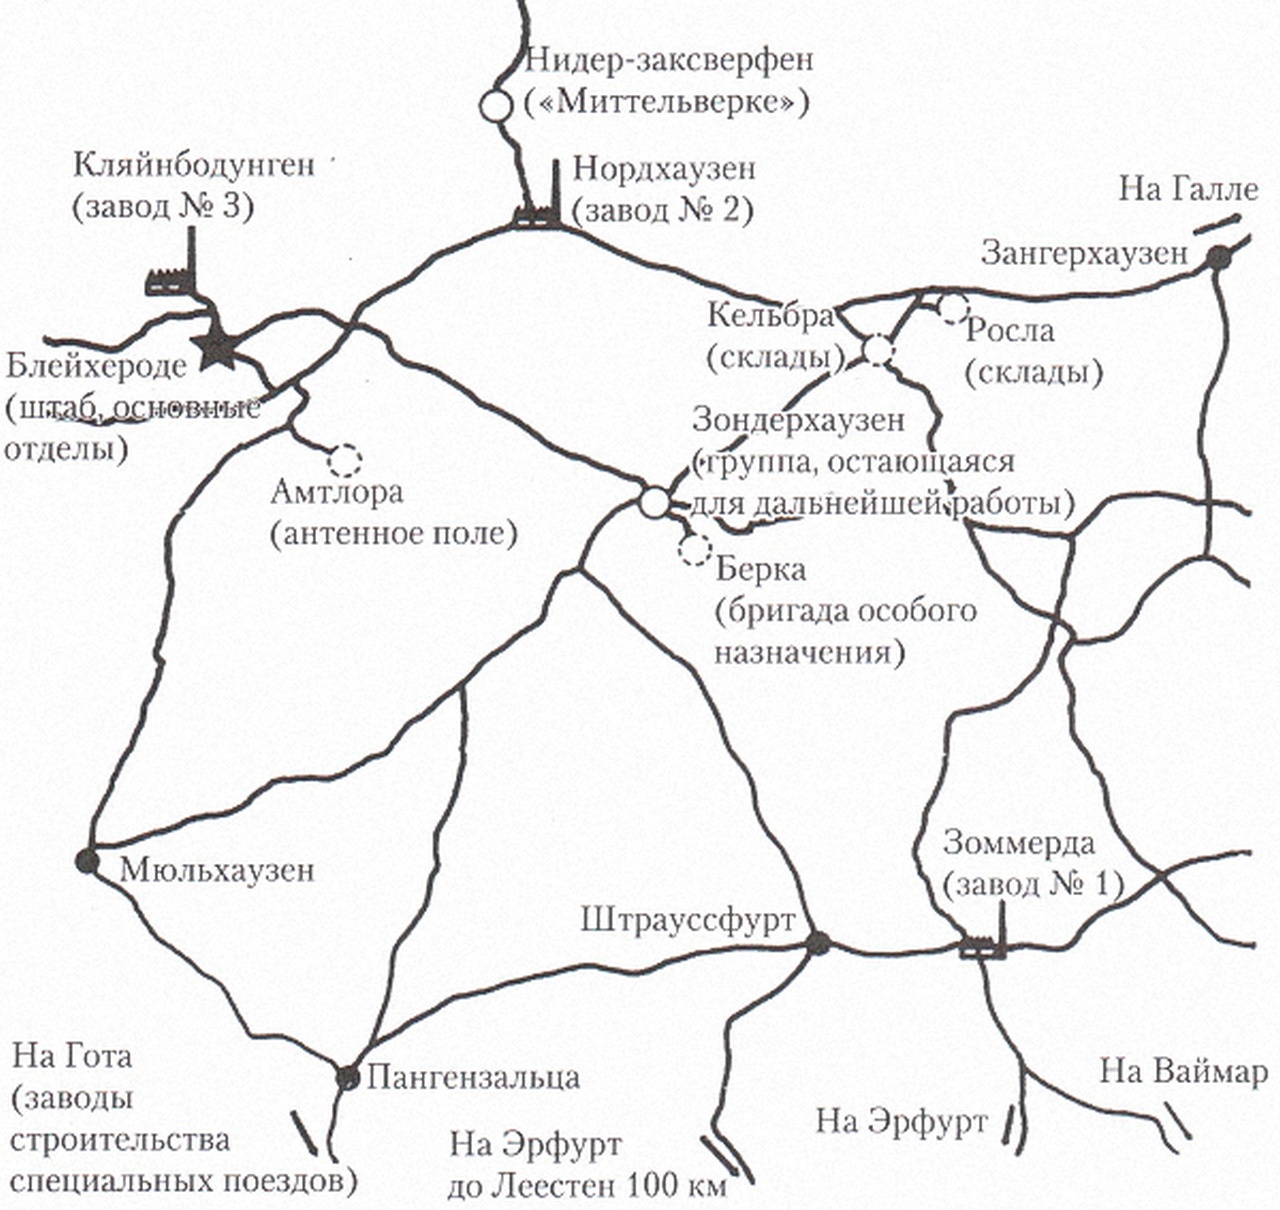 Схема с расположением основных отделов и заводов института «Нордхаузен».